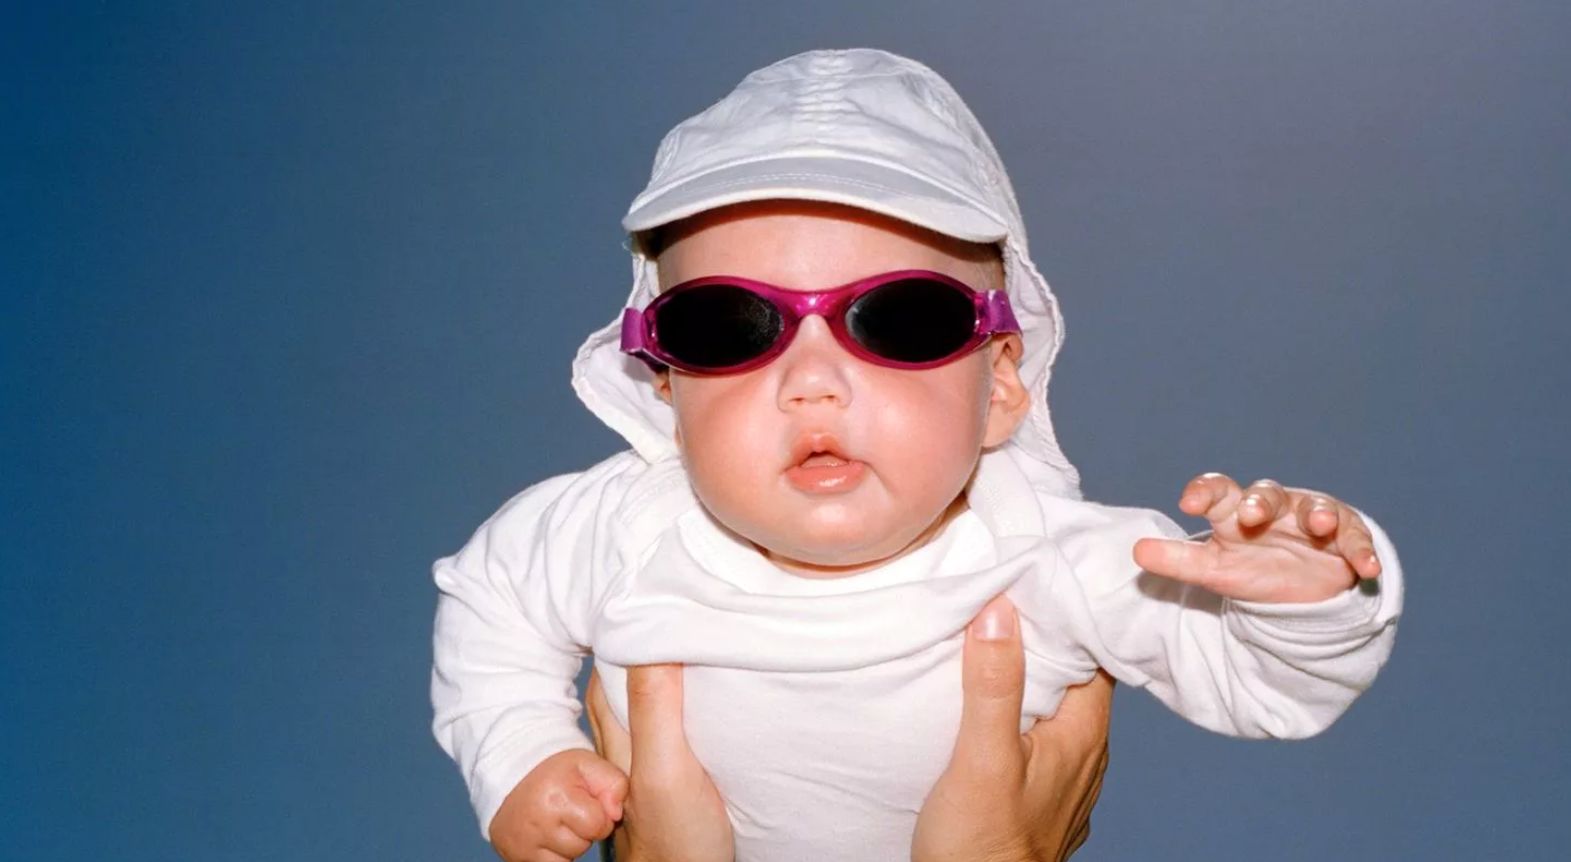 کودکان بیشتر از بزرگسالان به عینک آفتابی نیاز دارند